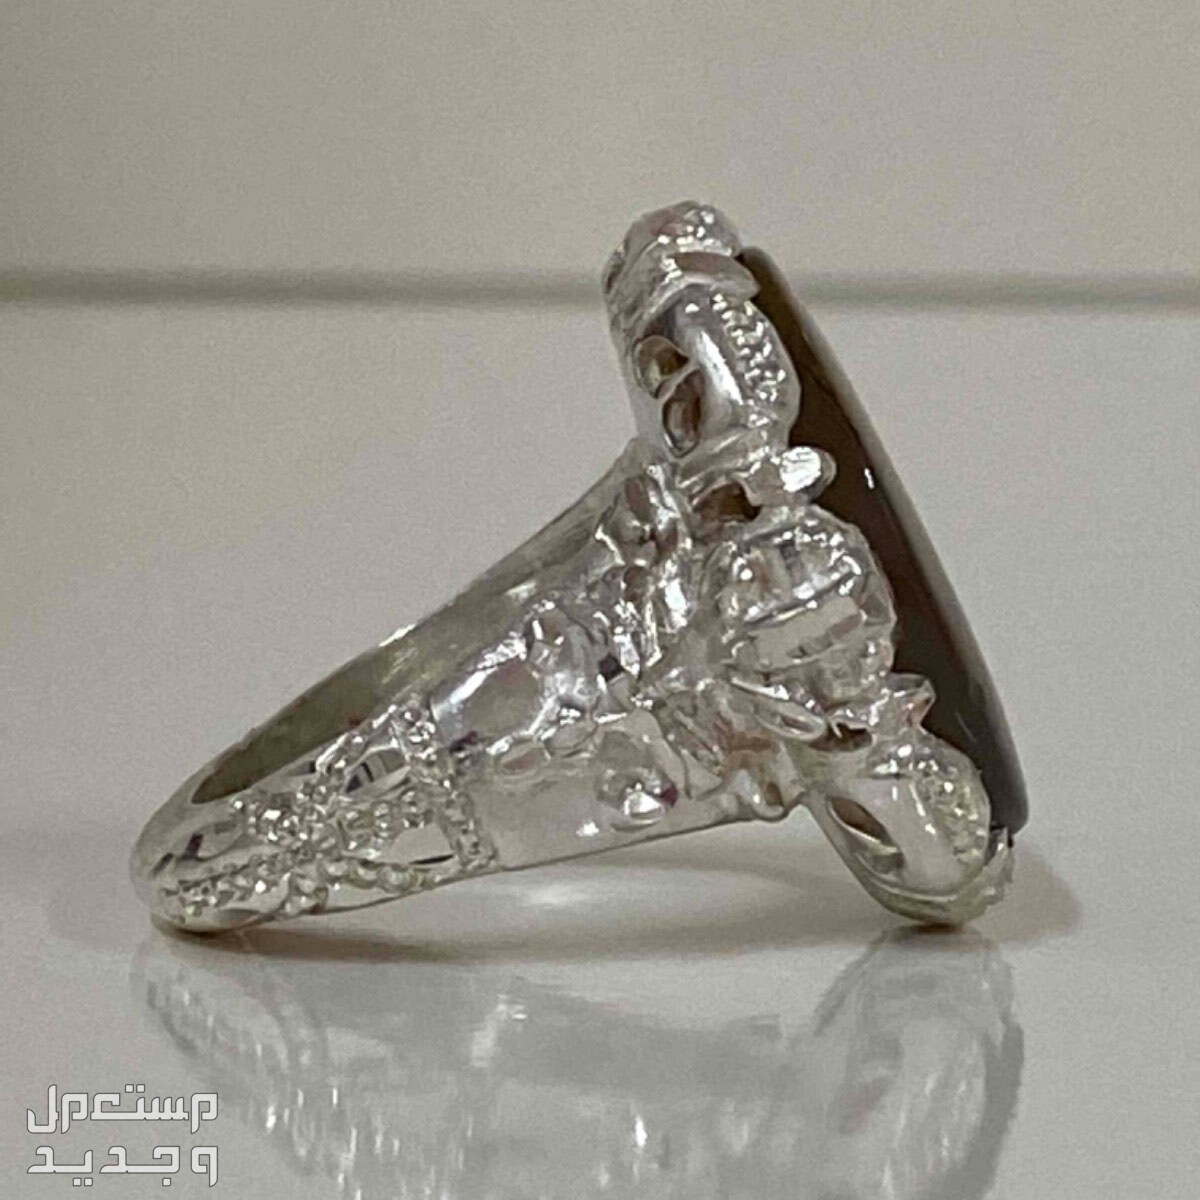 خاتم شجري يماني طبيعي ملكي المنظر والصياغه